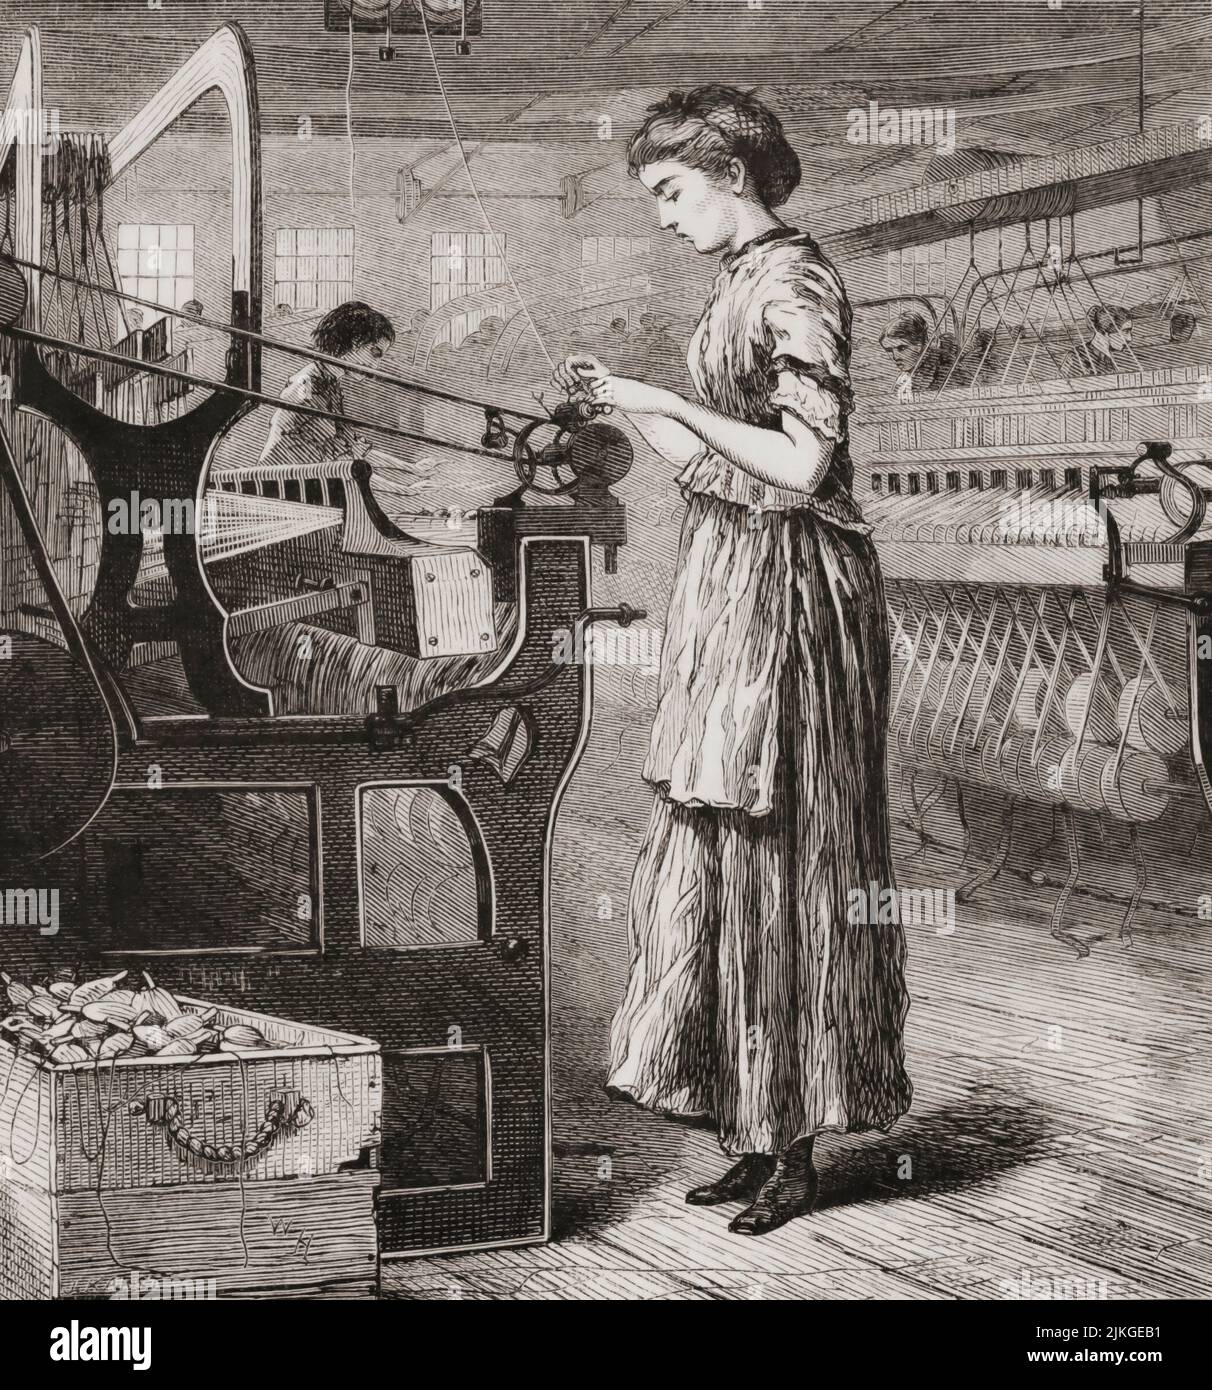 Femme travaillant sur un métier à tisser dans une usine au 19th siècle, Etats-Unis d'Amérique. Après une illustration de Winslow Homer. Banque D'Images